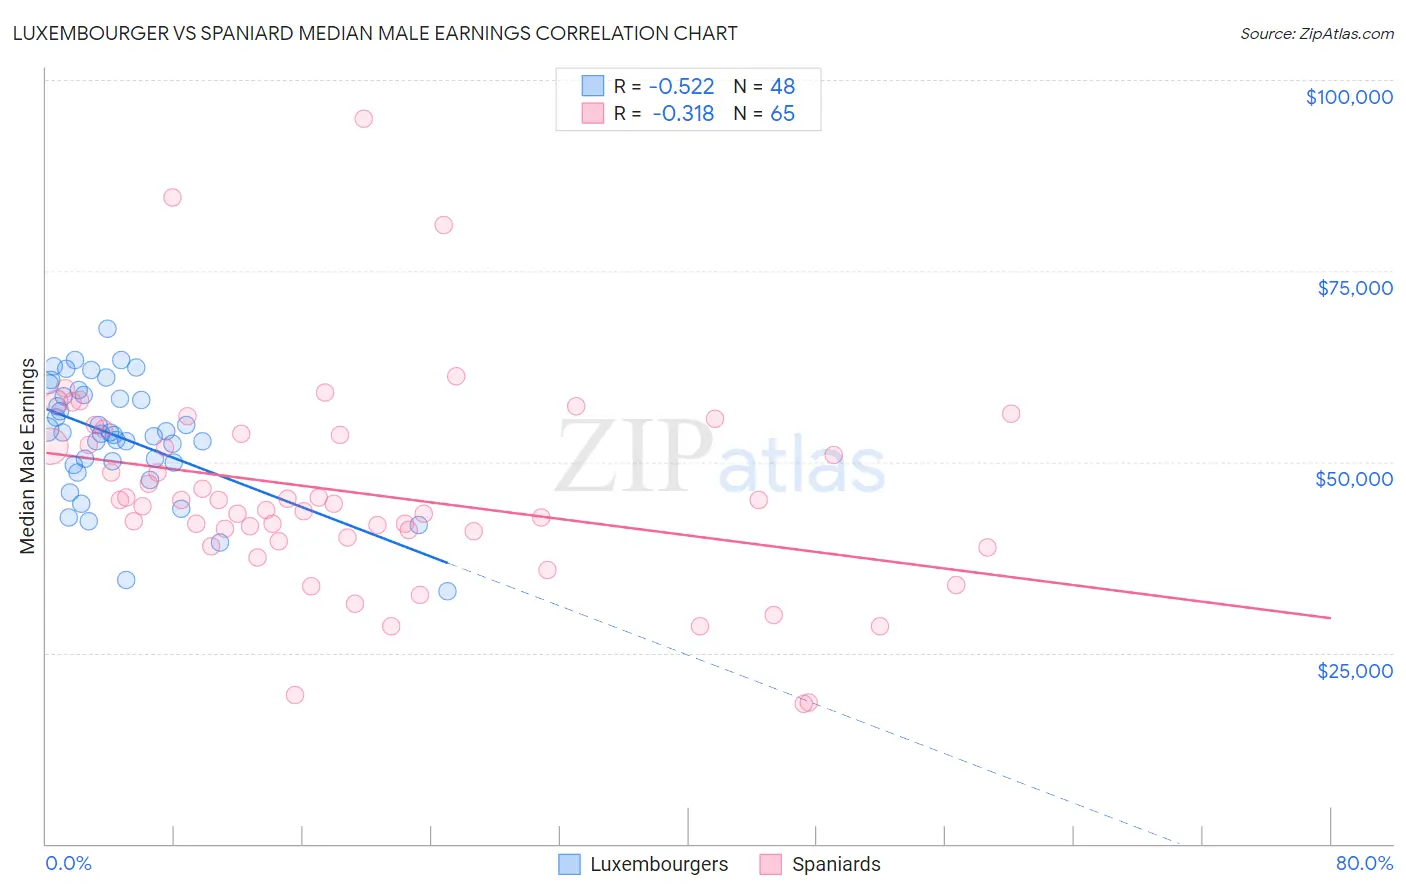 Luxembourger vs Spaniard Median Male Earnings